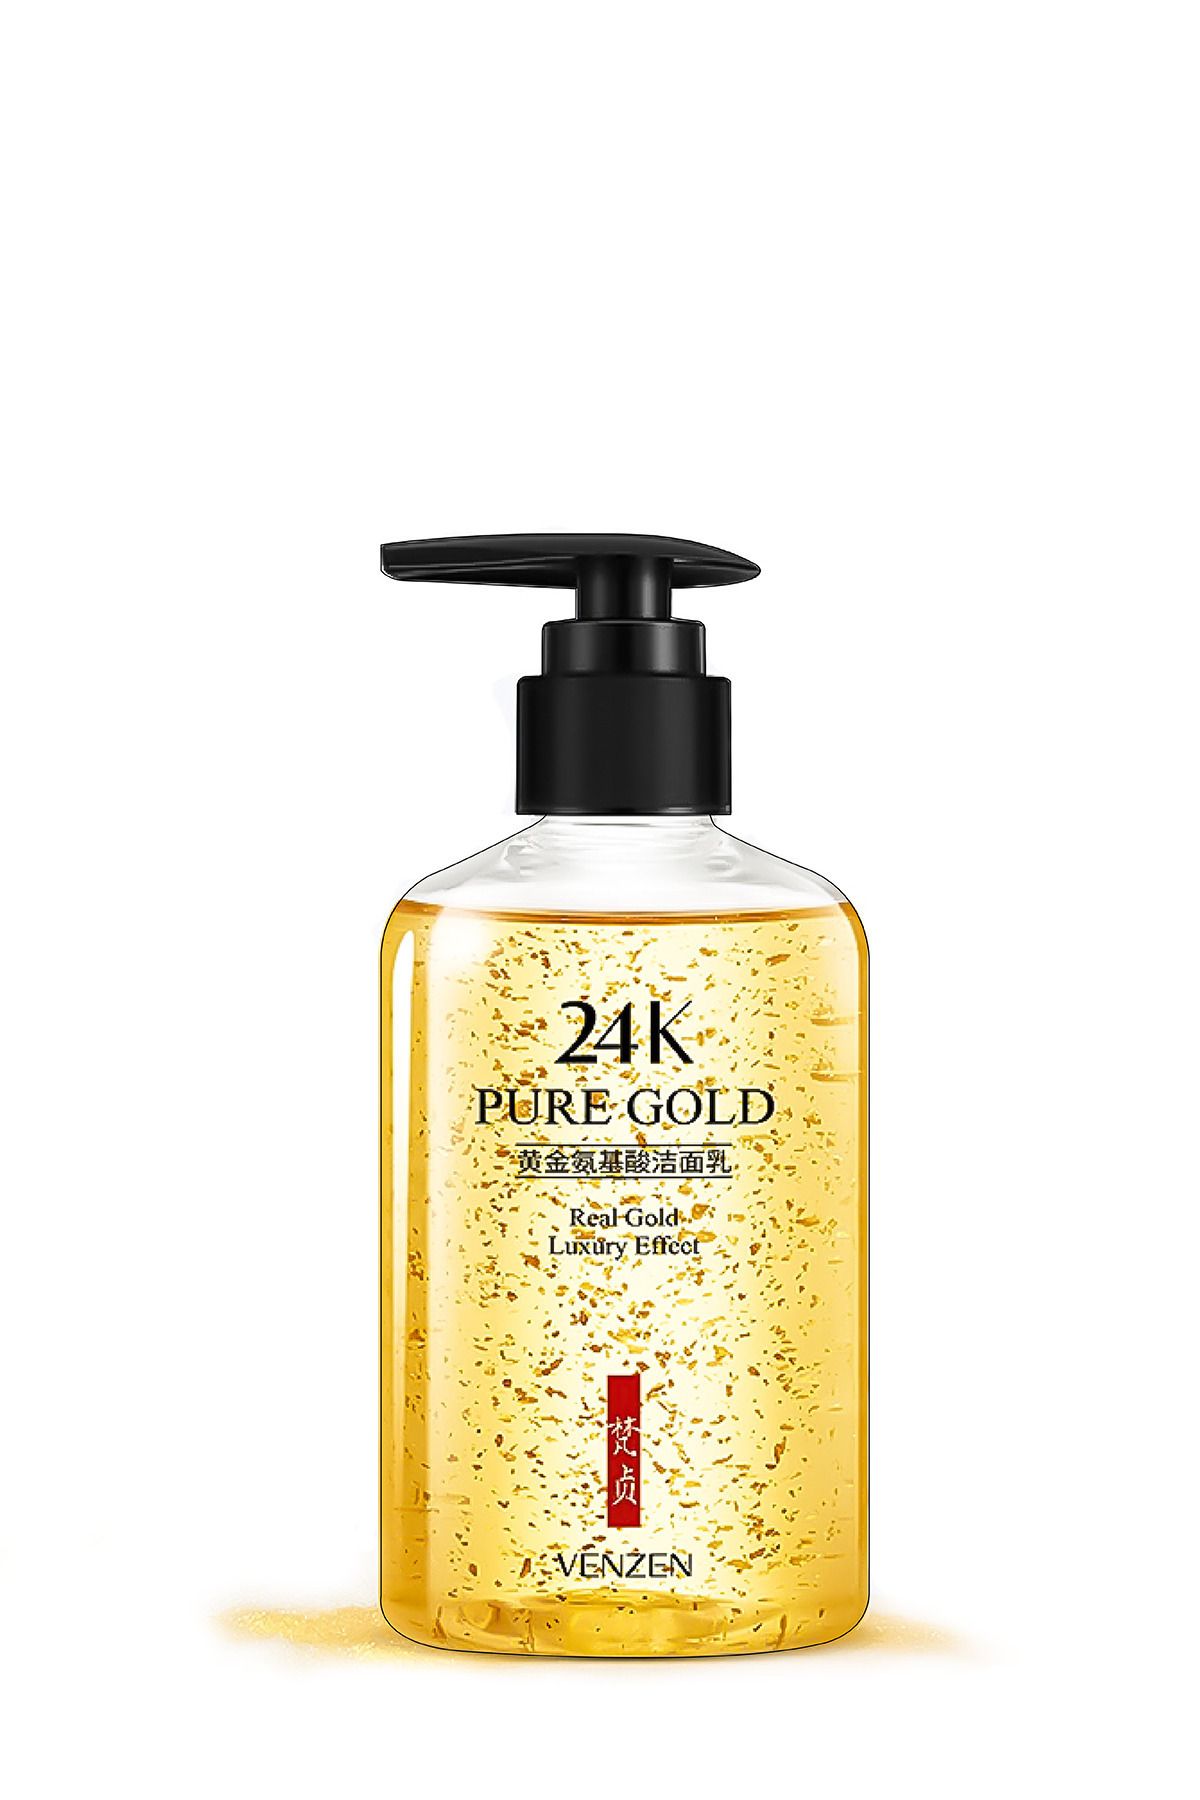 Venzen Su Bazlı 24k Altın Özlü Amino Asit Yüz&makyaj Temizleme Jeli (200ML)